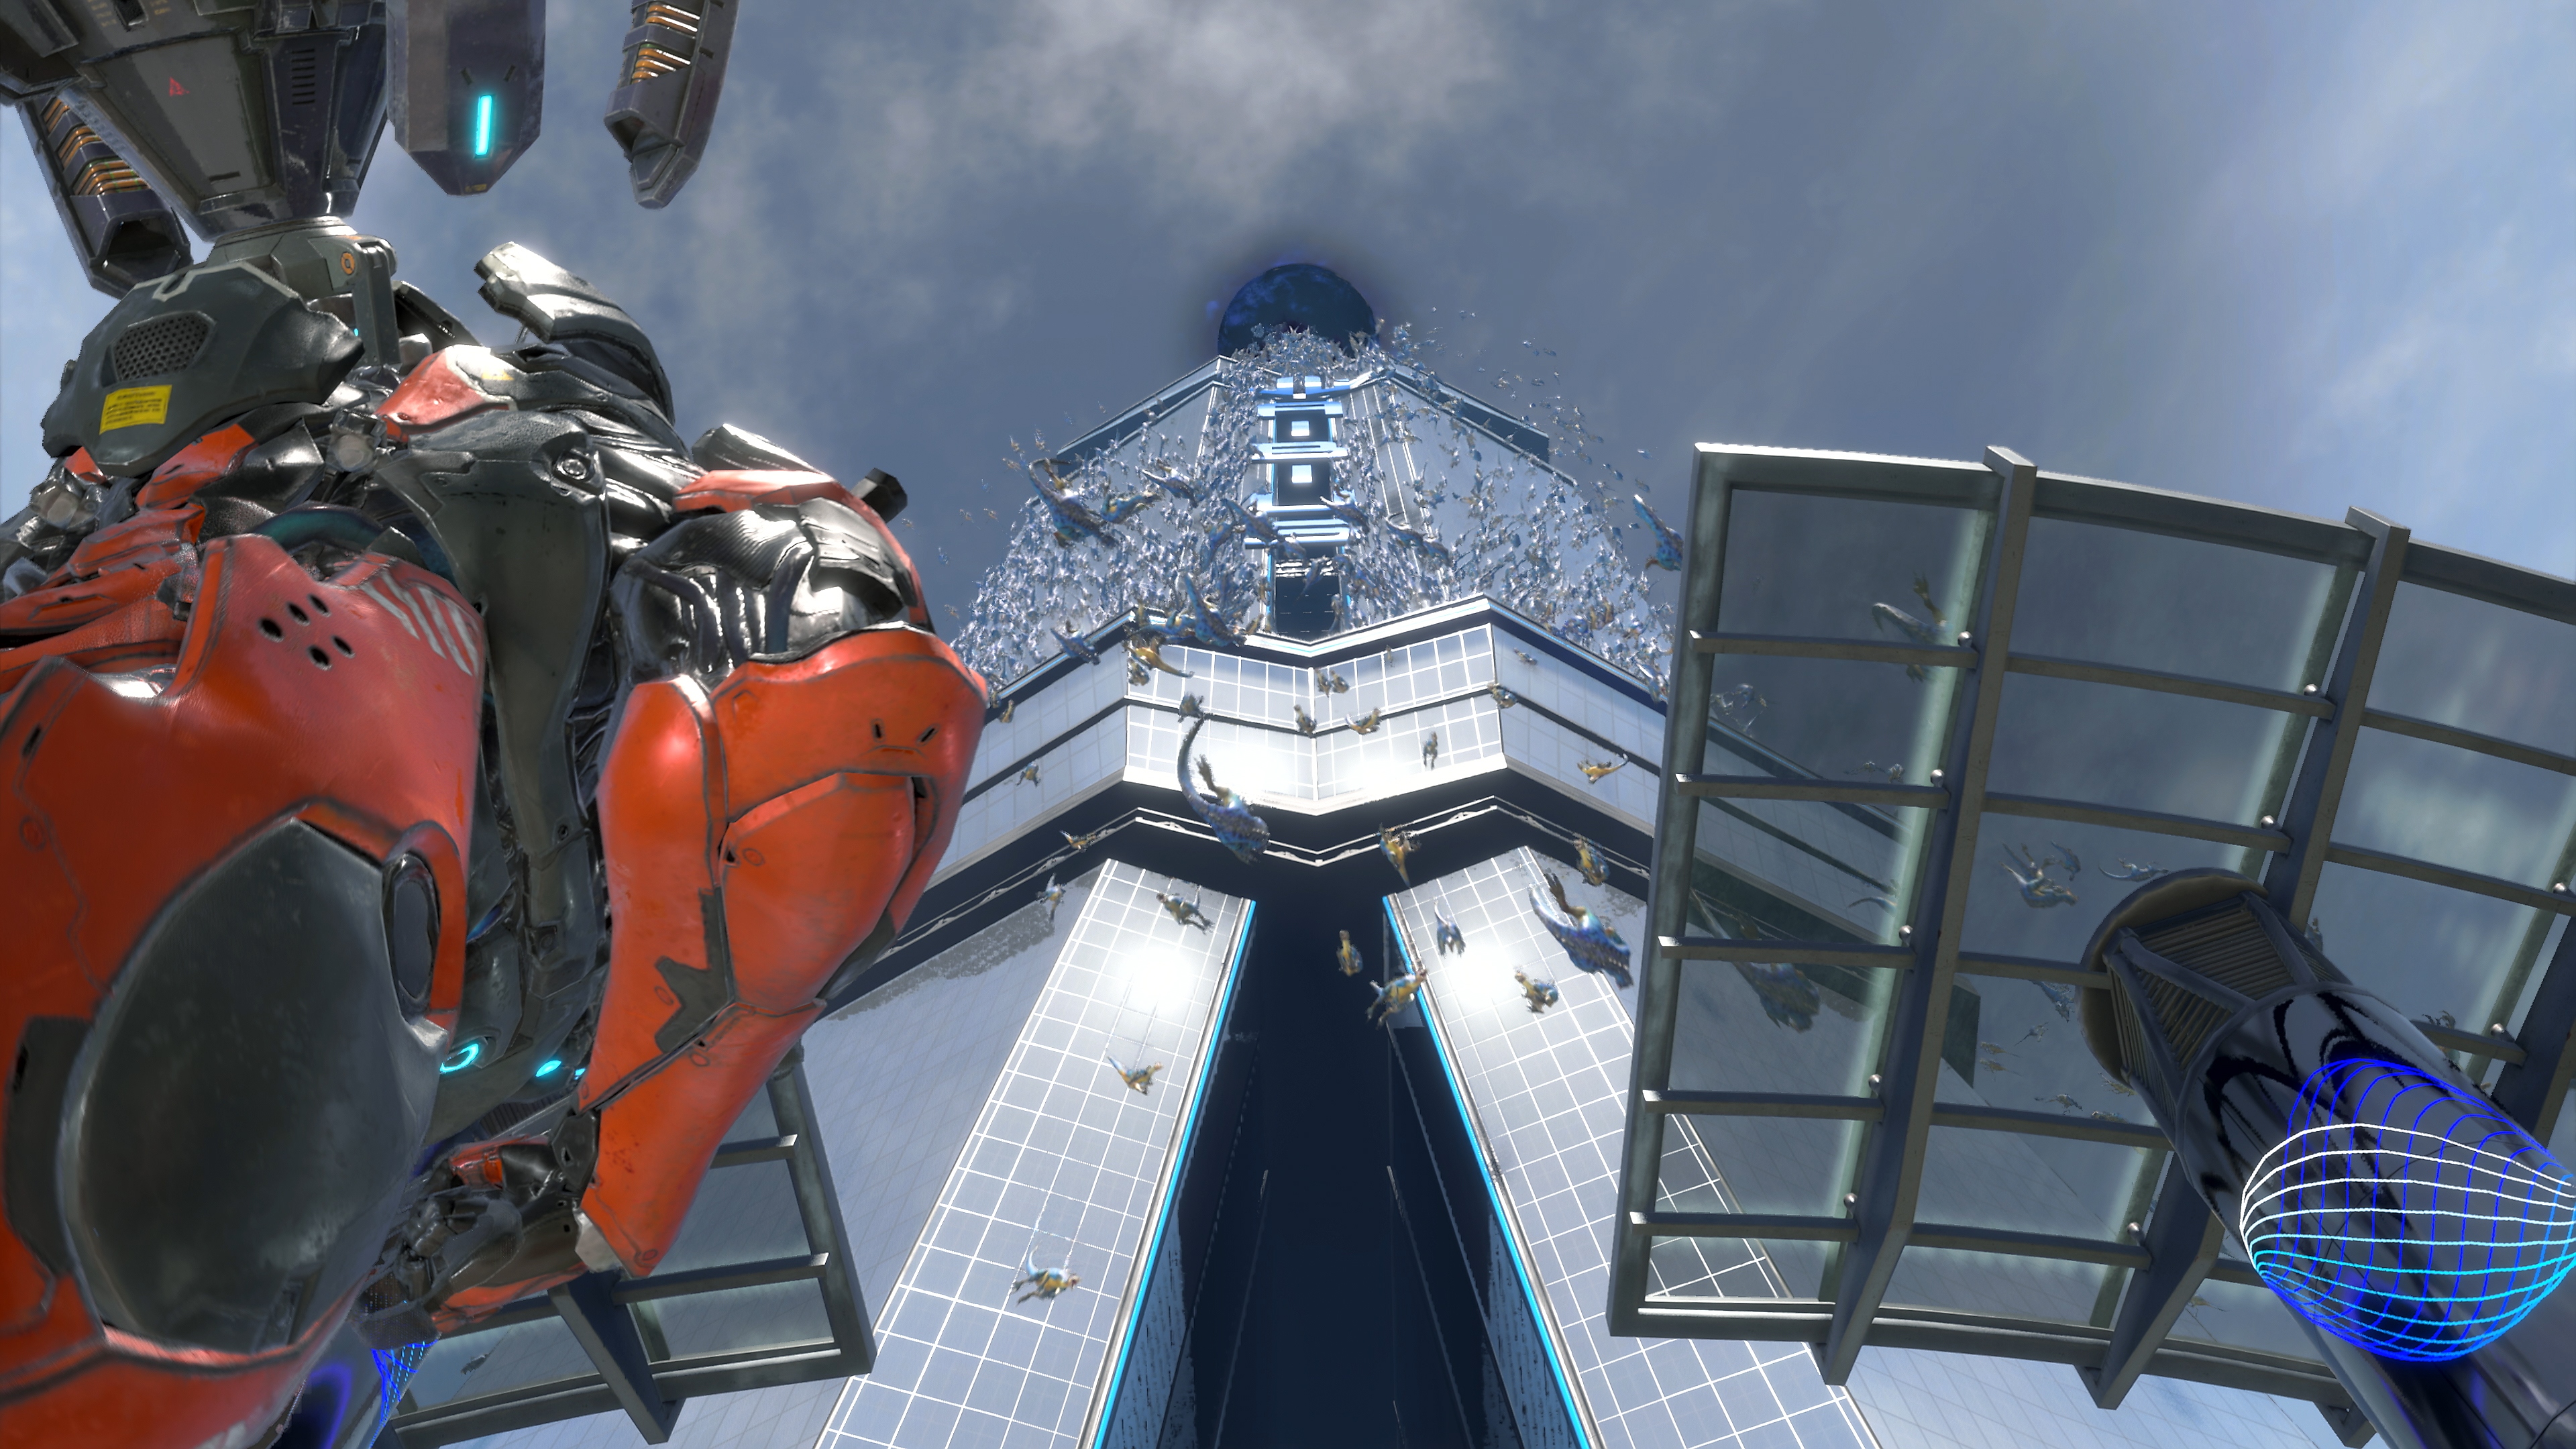 لقطة شاشة للعبة Exoprimal تظهر فيها قمة مبنى شاهق بينما تسقط العديد من الديناصورات على الأرض